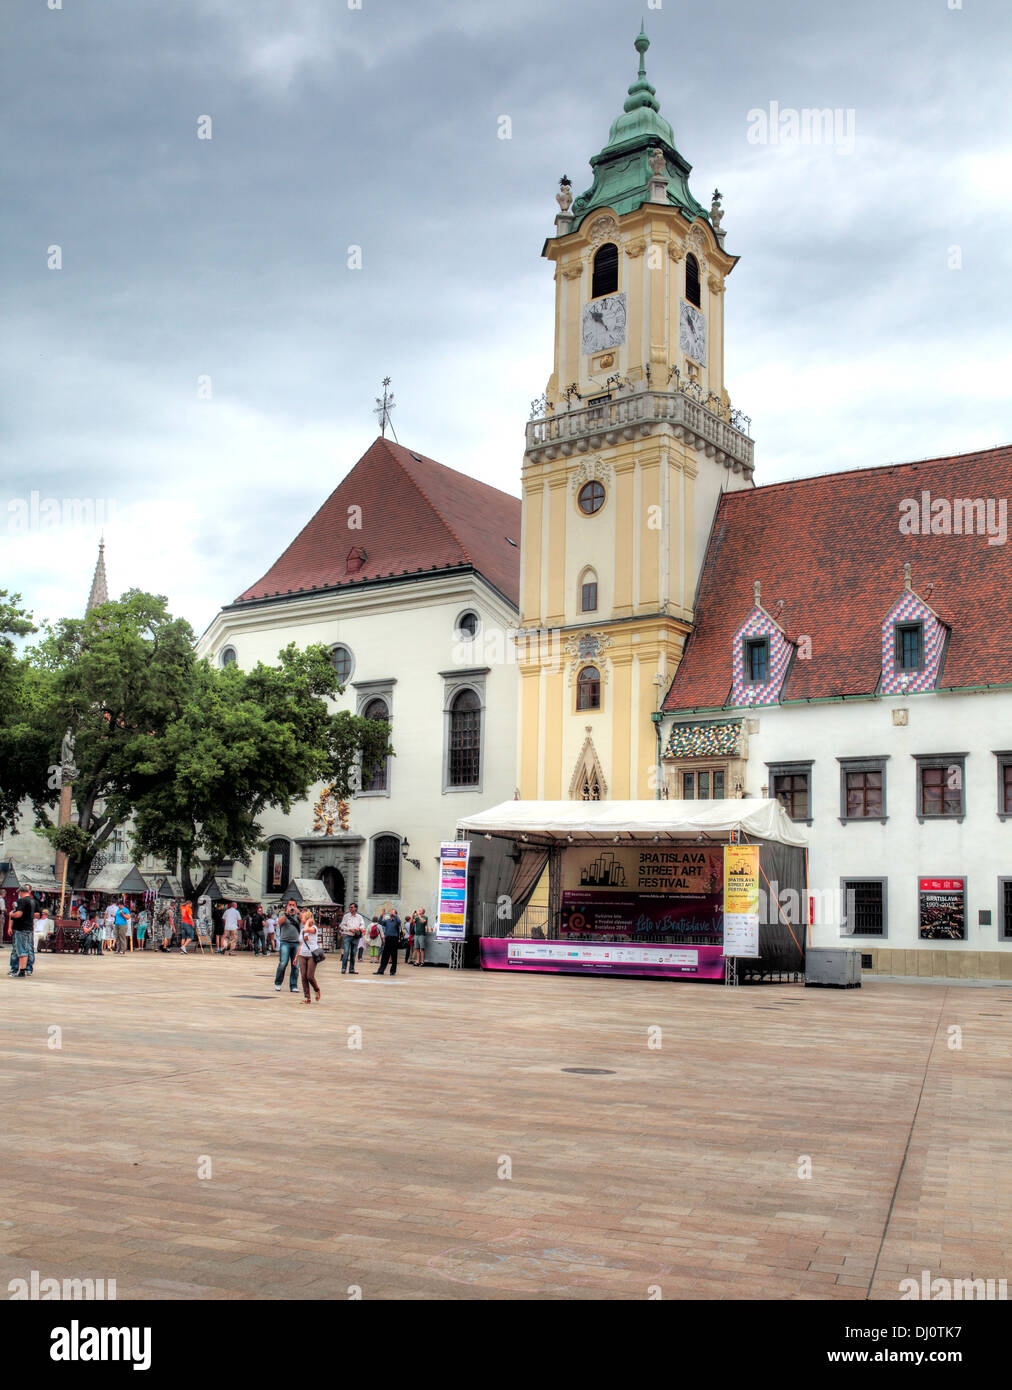 Hlavne namesti, la piazza principale, vecchio municipio di clock tower, Bratislava, Slovacchia Foto Stock